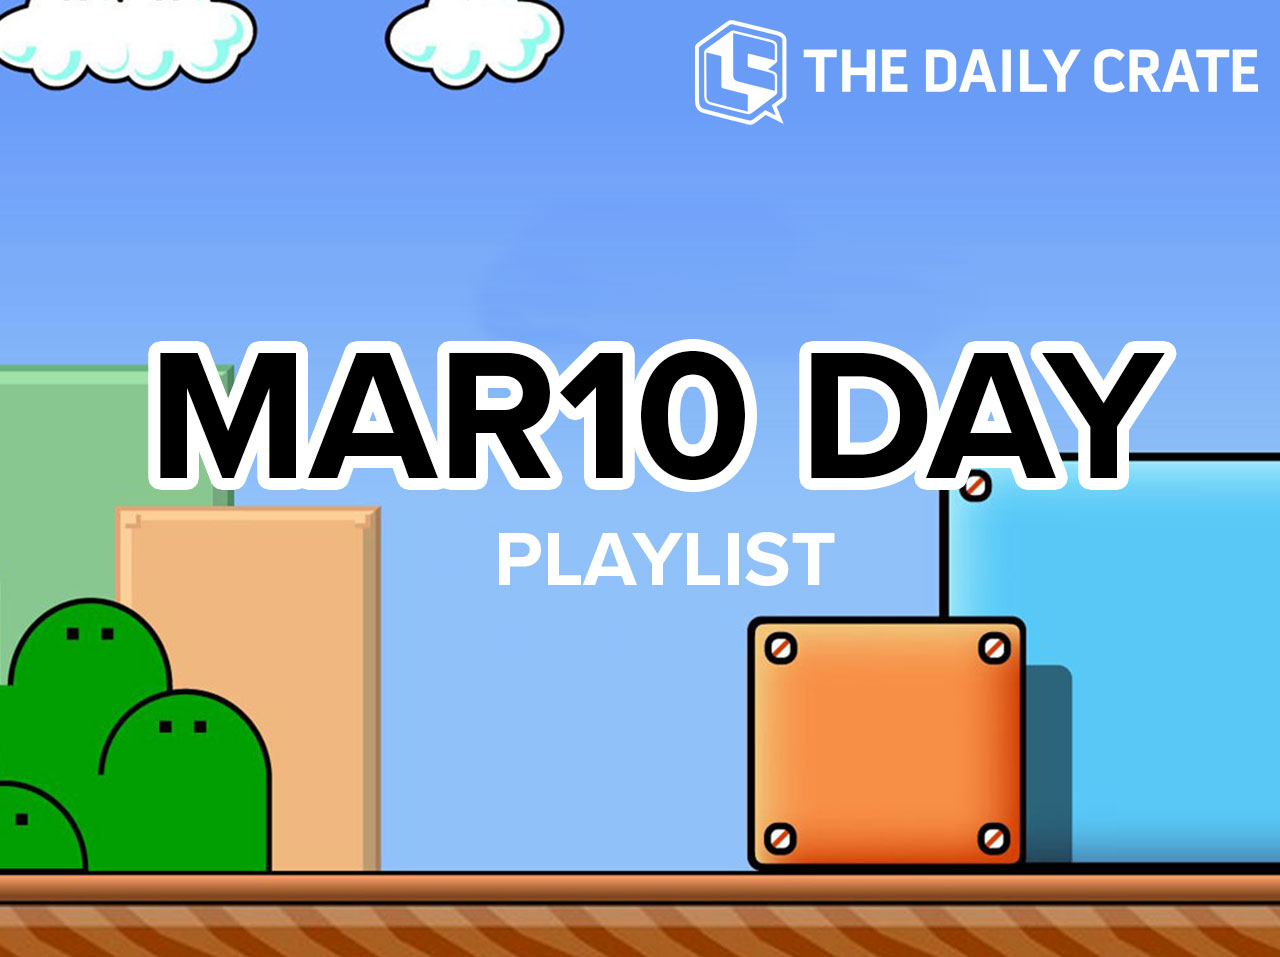 GAMING: Happy MAR10 Day! (Playlist)